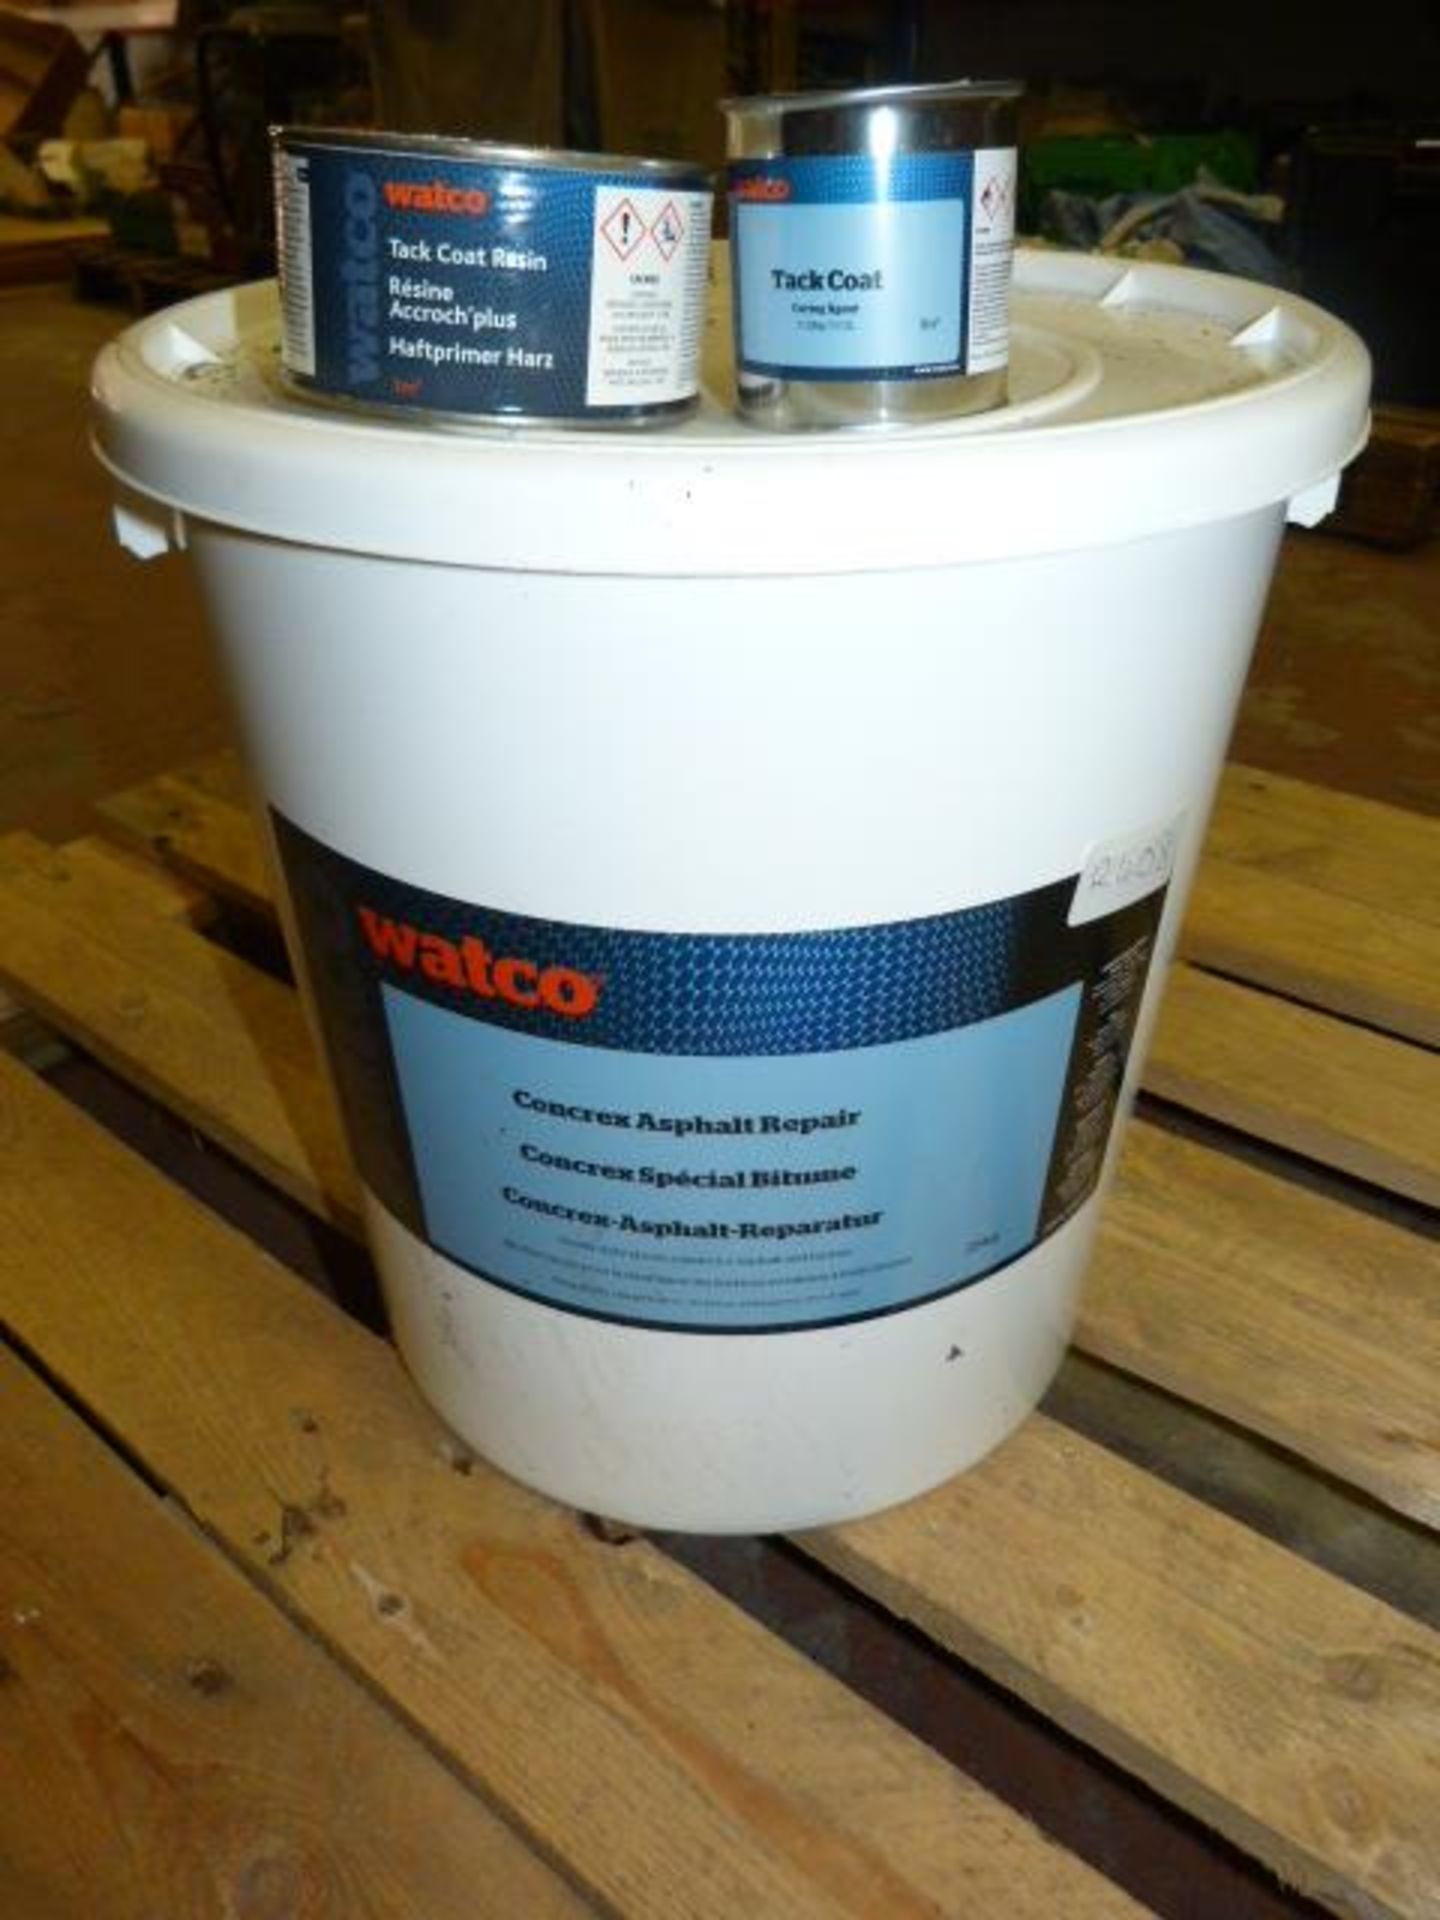 25kg Tub of Watco Concrex Ash Felt Repair plus Tack Coat Resin and Tack Coat Curing Agent